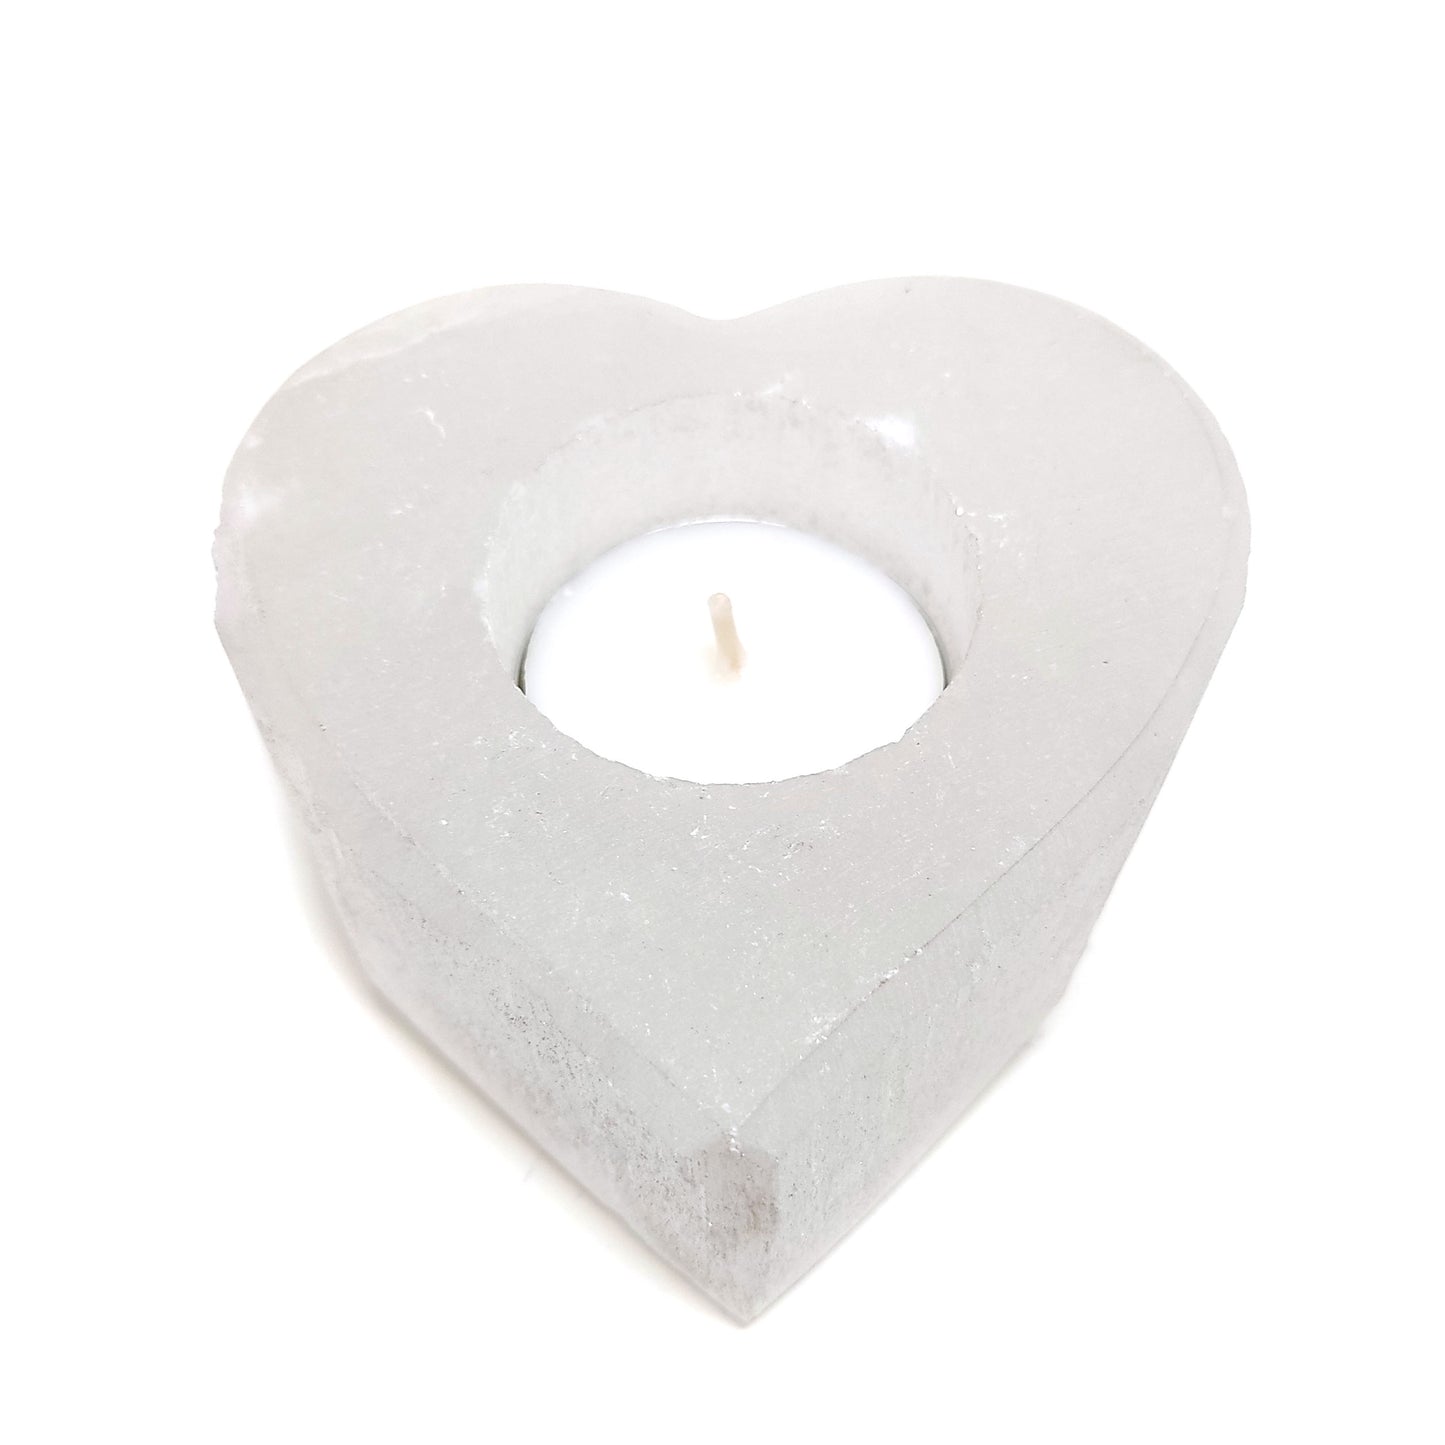 Selenite Heart Gypsum Crystal Tea Light Candle Holder Selenite Home Decor Gift